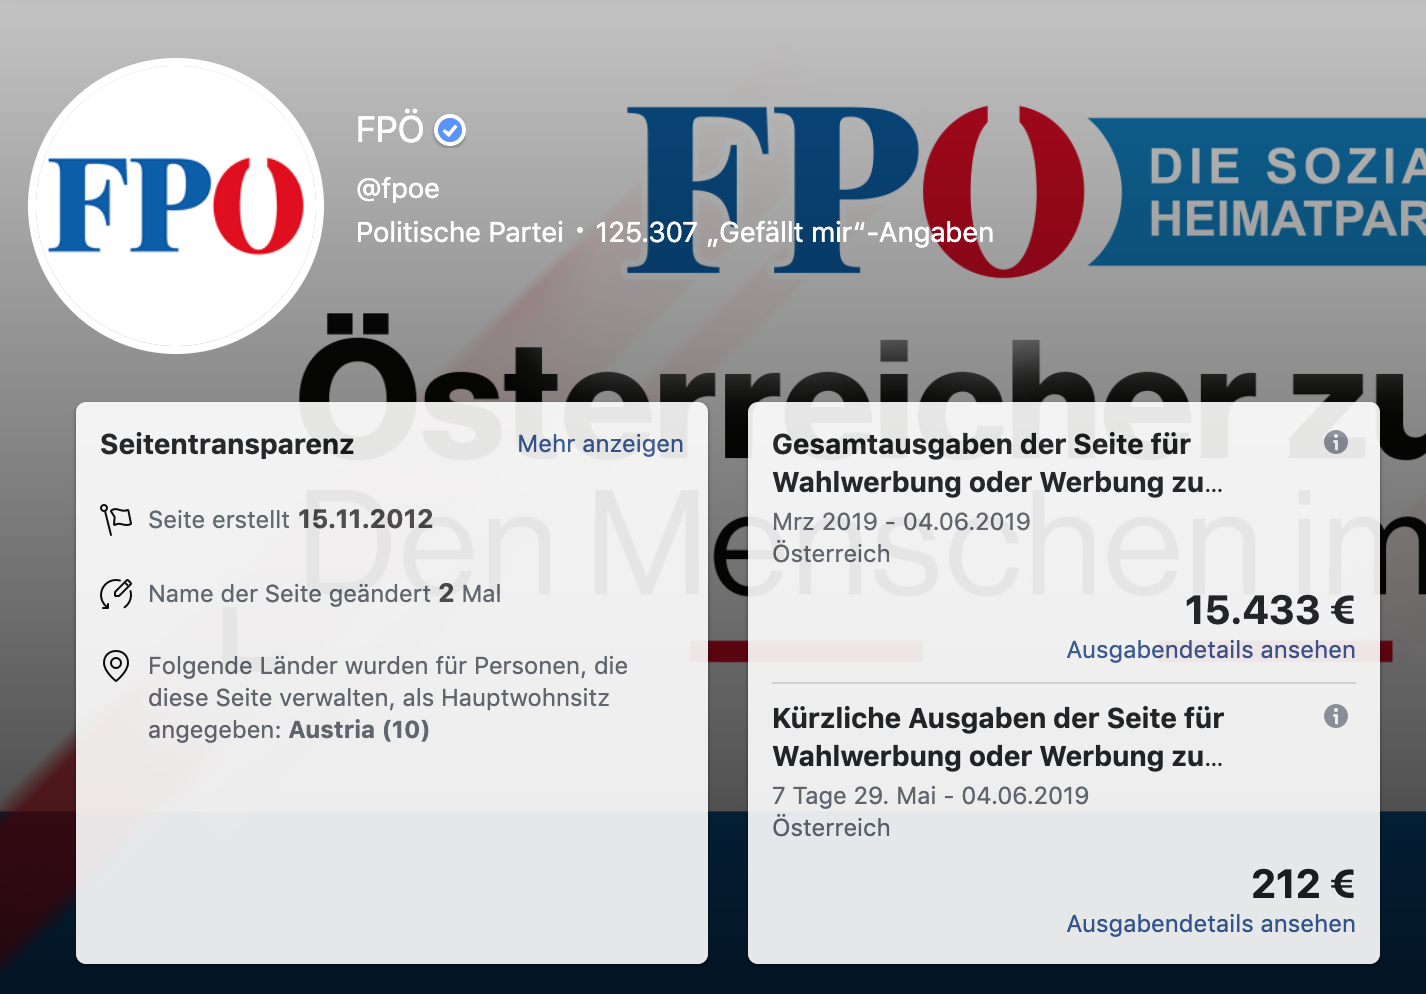 FB-Seite FPÖ – Werbegelder: Die FPÖ investierte in den vergangenen 2 Monaten in die Parteiseite annähernd so viel wie in Straches FB-Seite